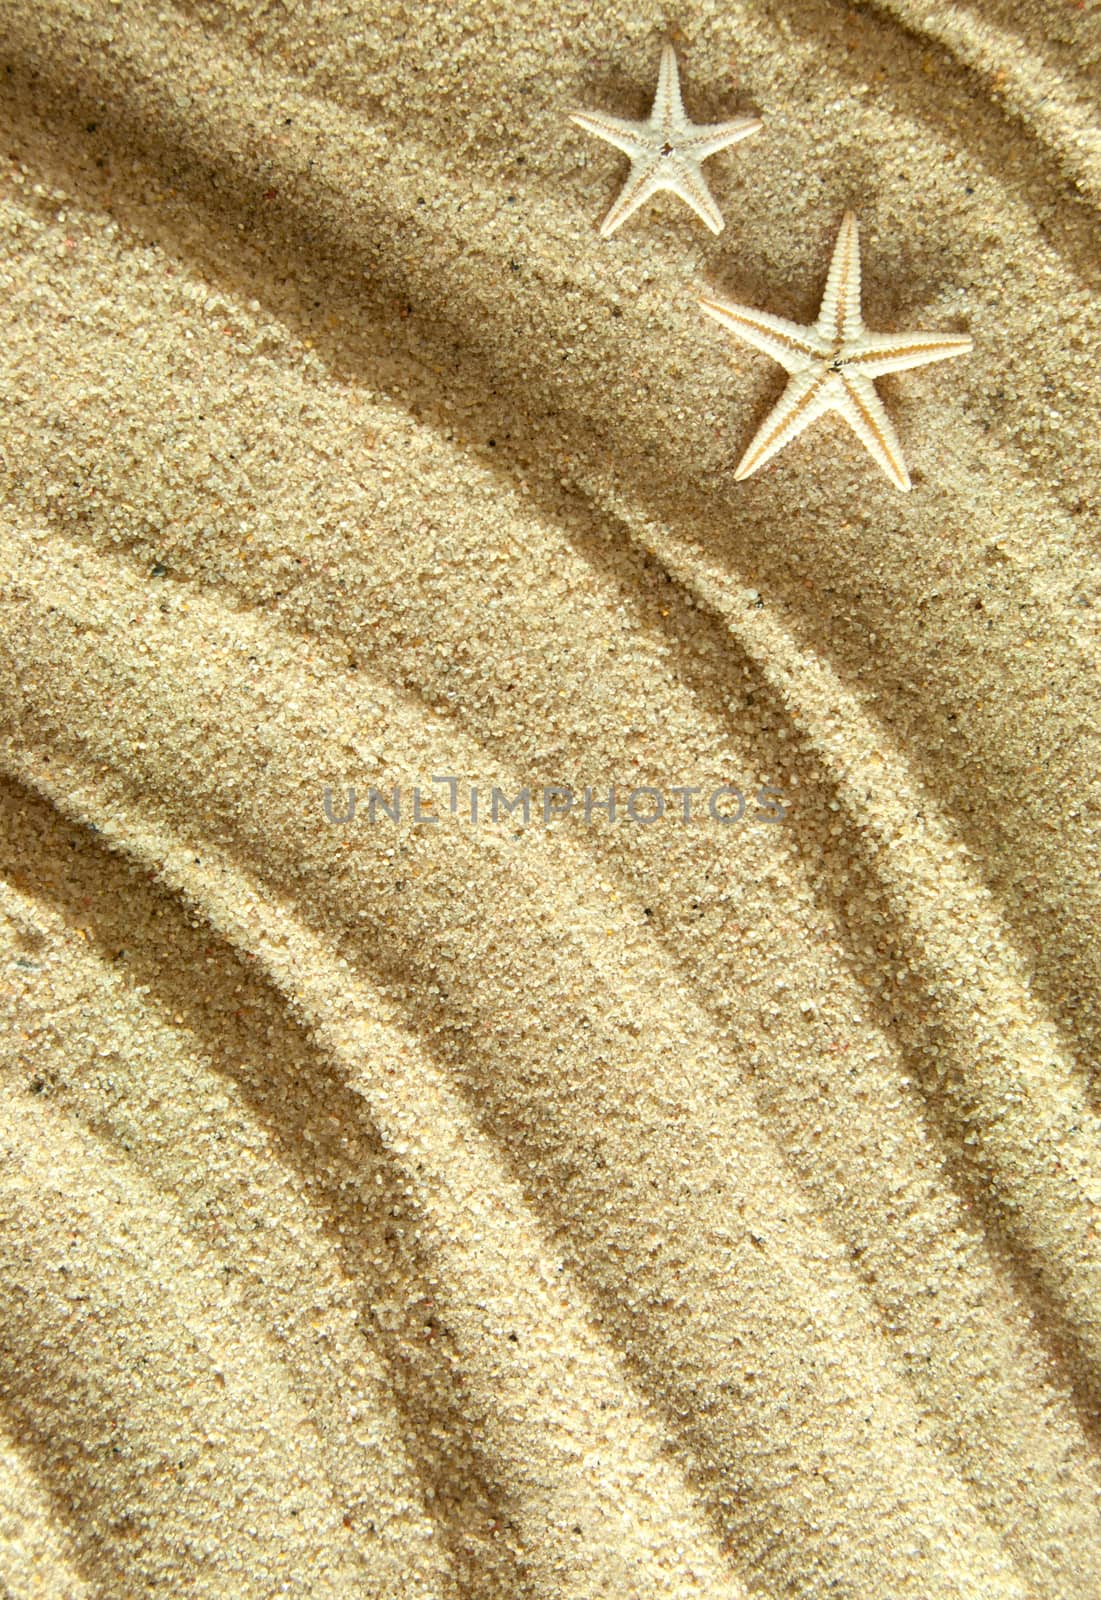 Starfish shells background by unikpix